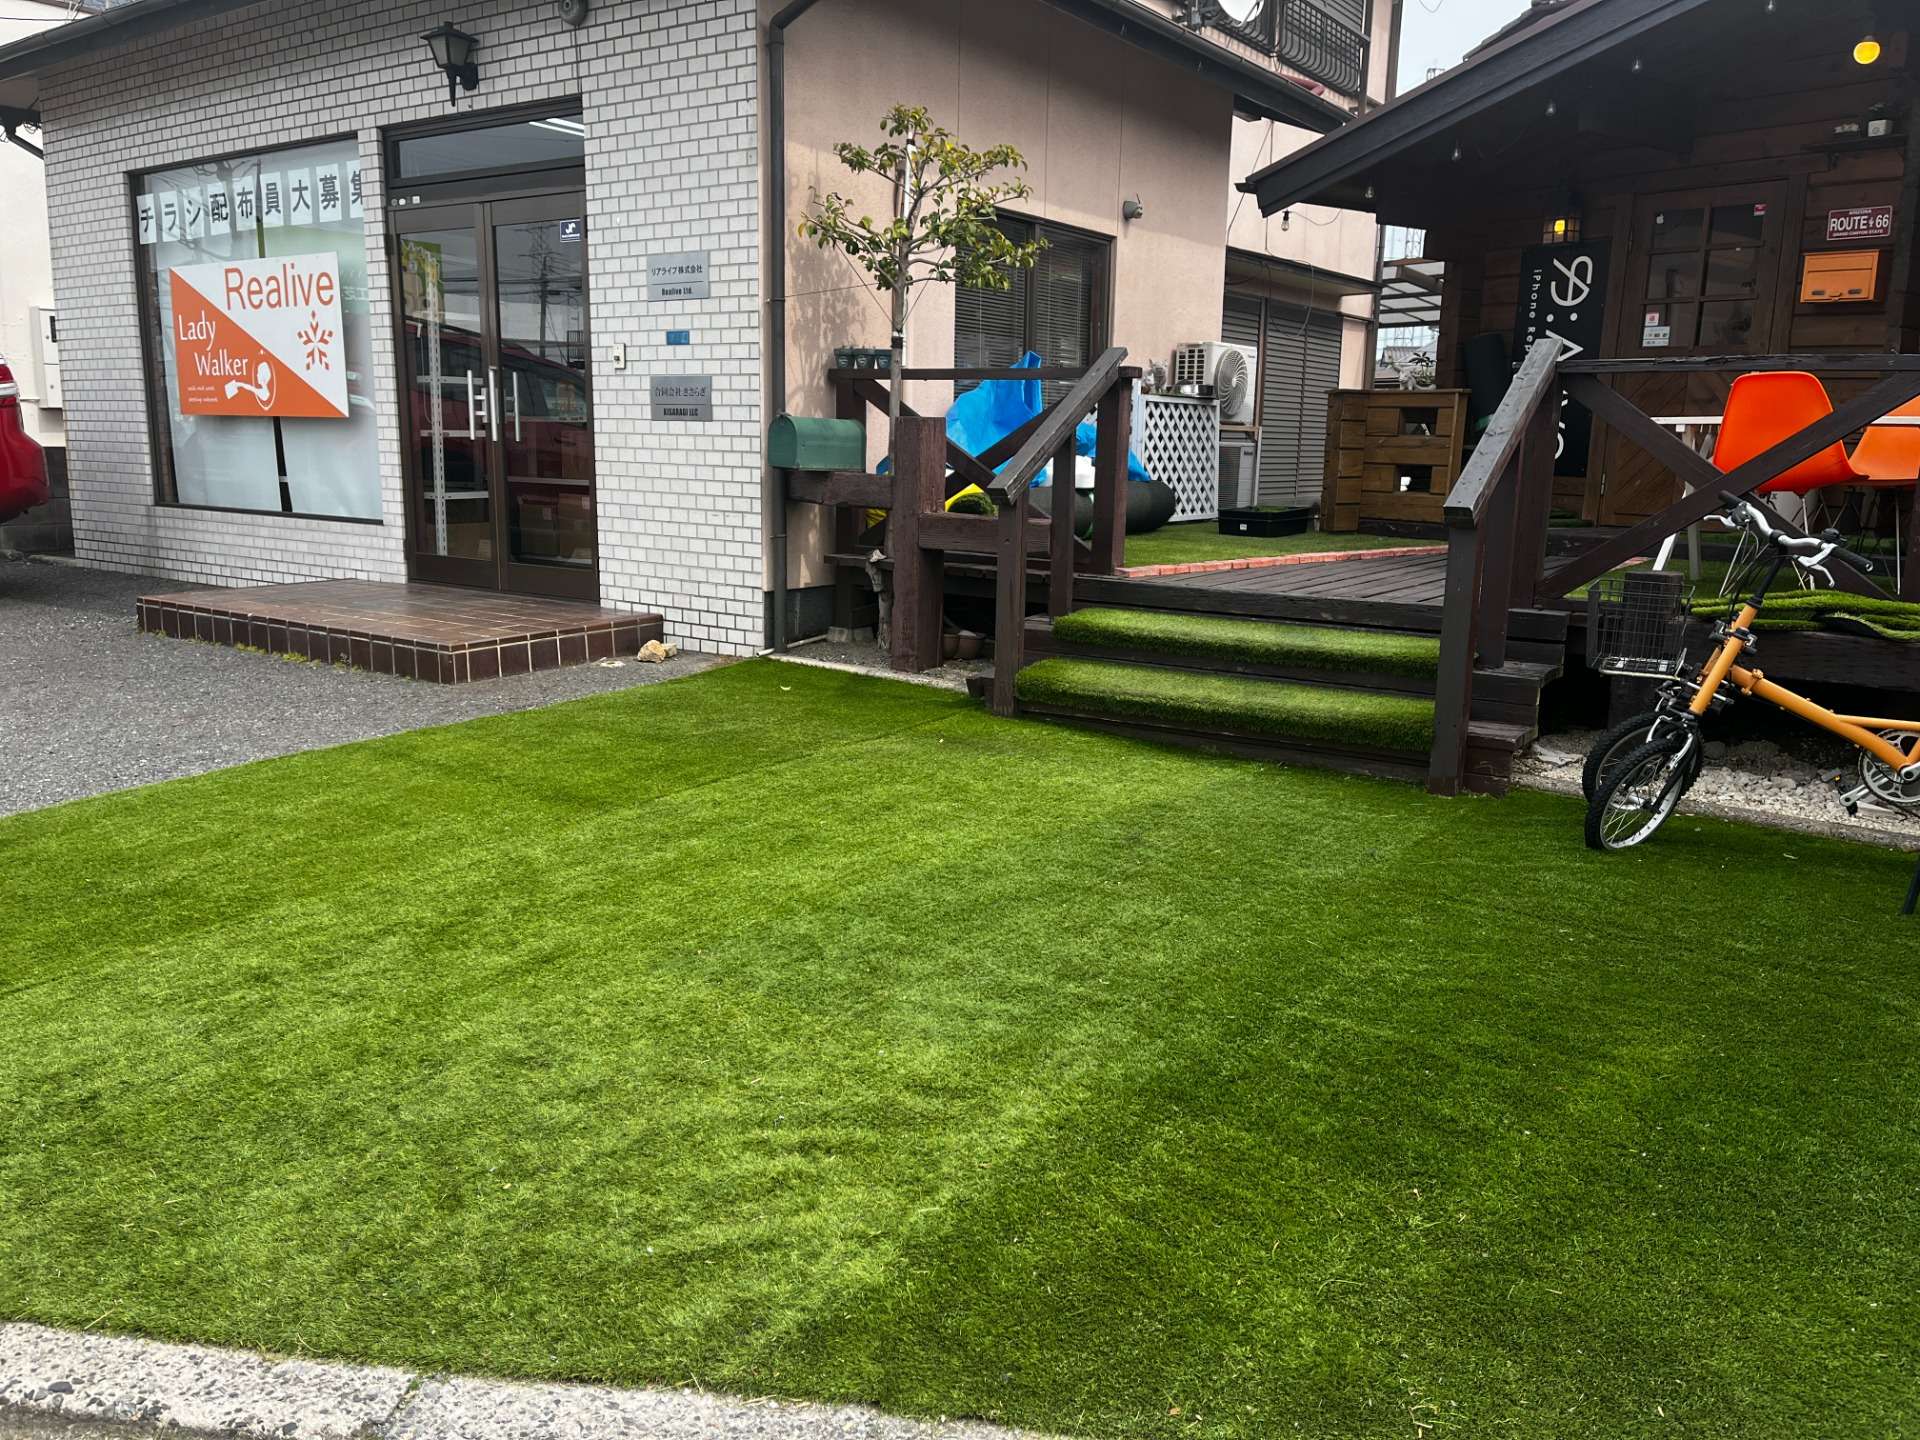 【芝キング岡山】店舗のイメージアップに人工芝の活用が増えてきています